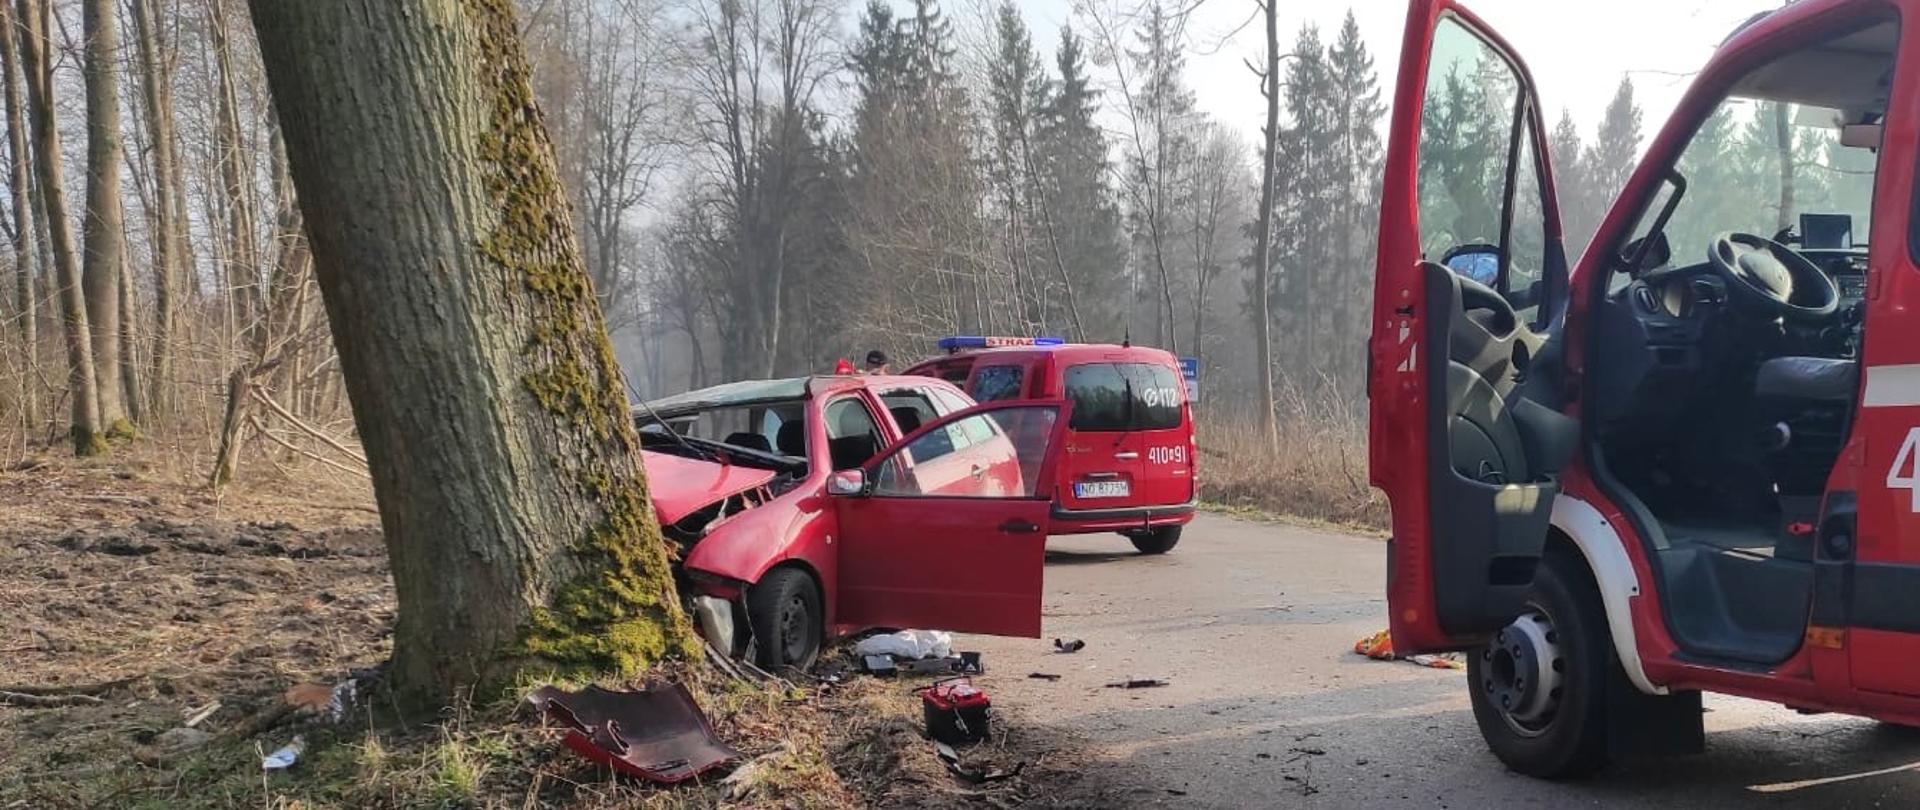 Z lewej strony drzewo a przy min rozbite czerwone auto, otwarte drzwi, uszkodzona maska i wybite szyby. Z prawej strony i w oddali stoi na drodze samochód strażacki.